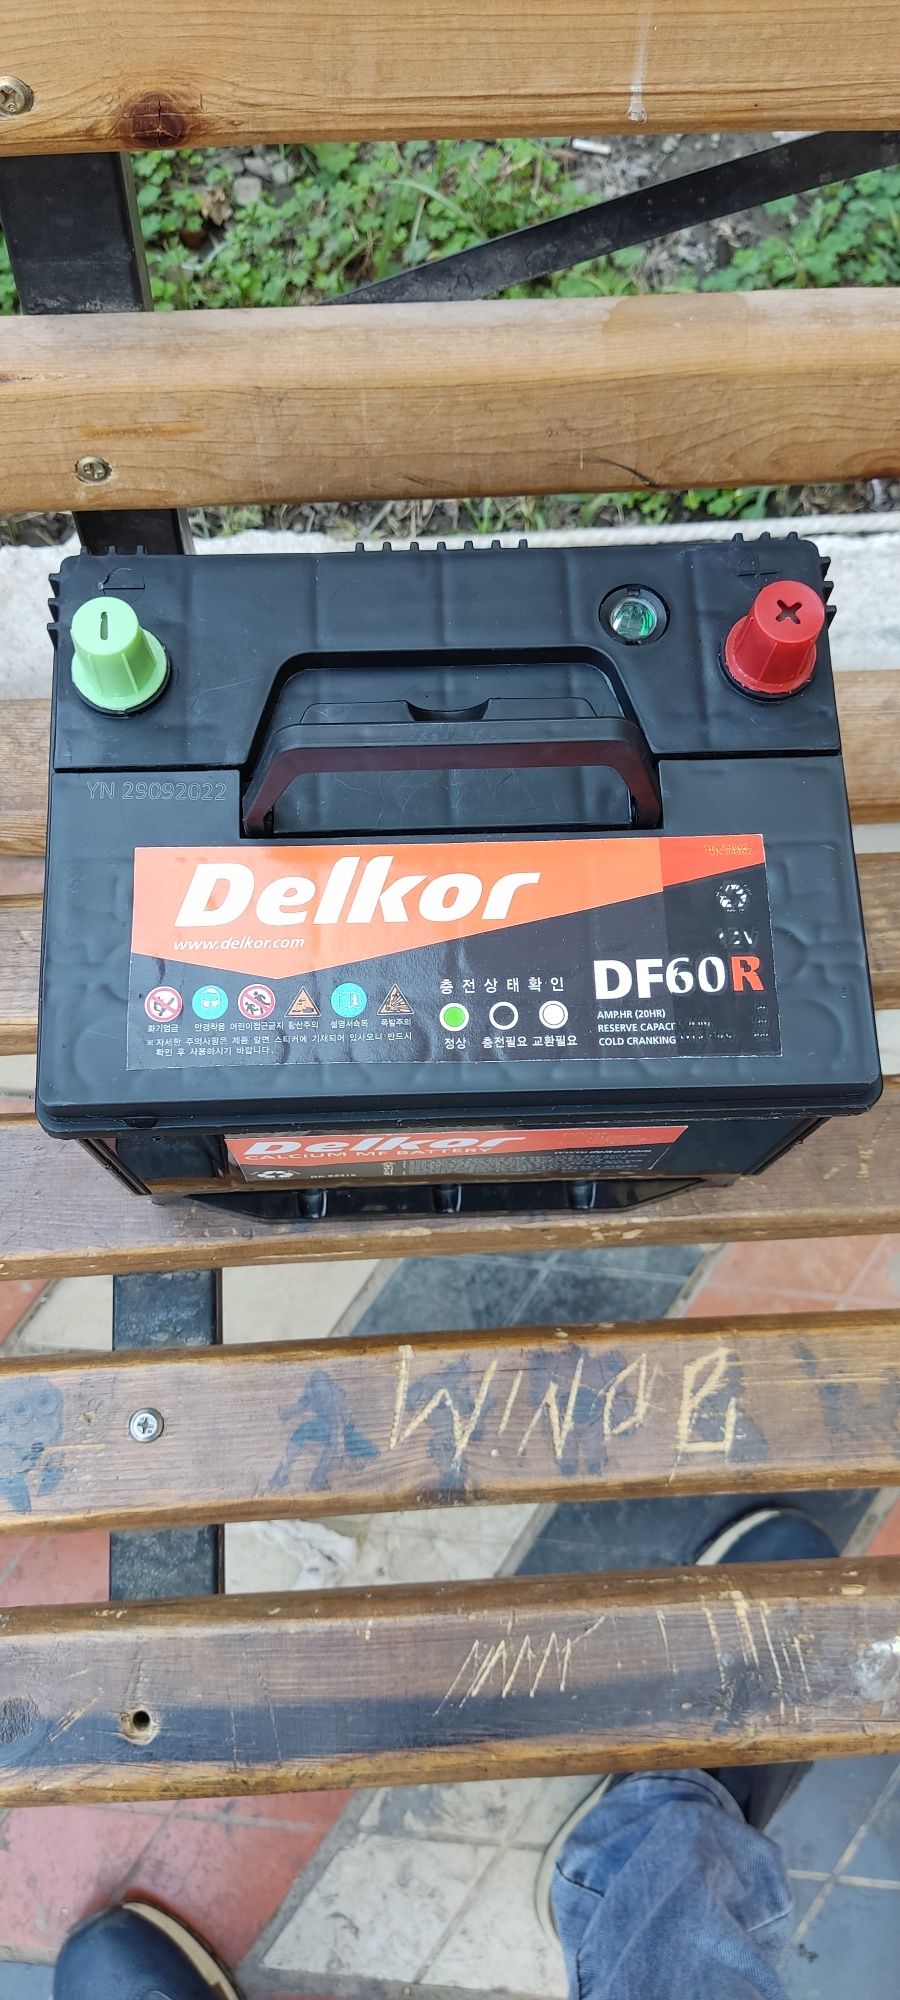 Delkor DF60L-R dastavka 24 7 mavjud